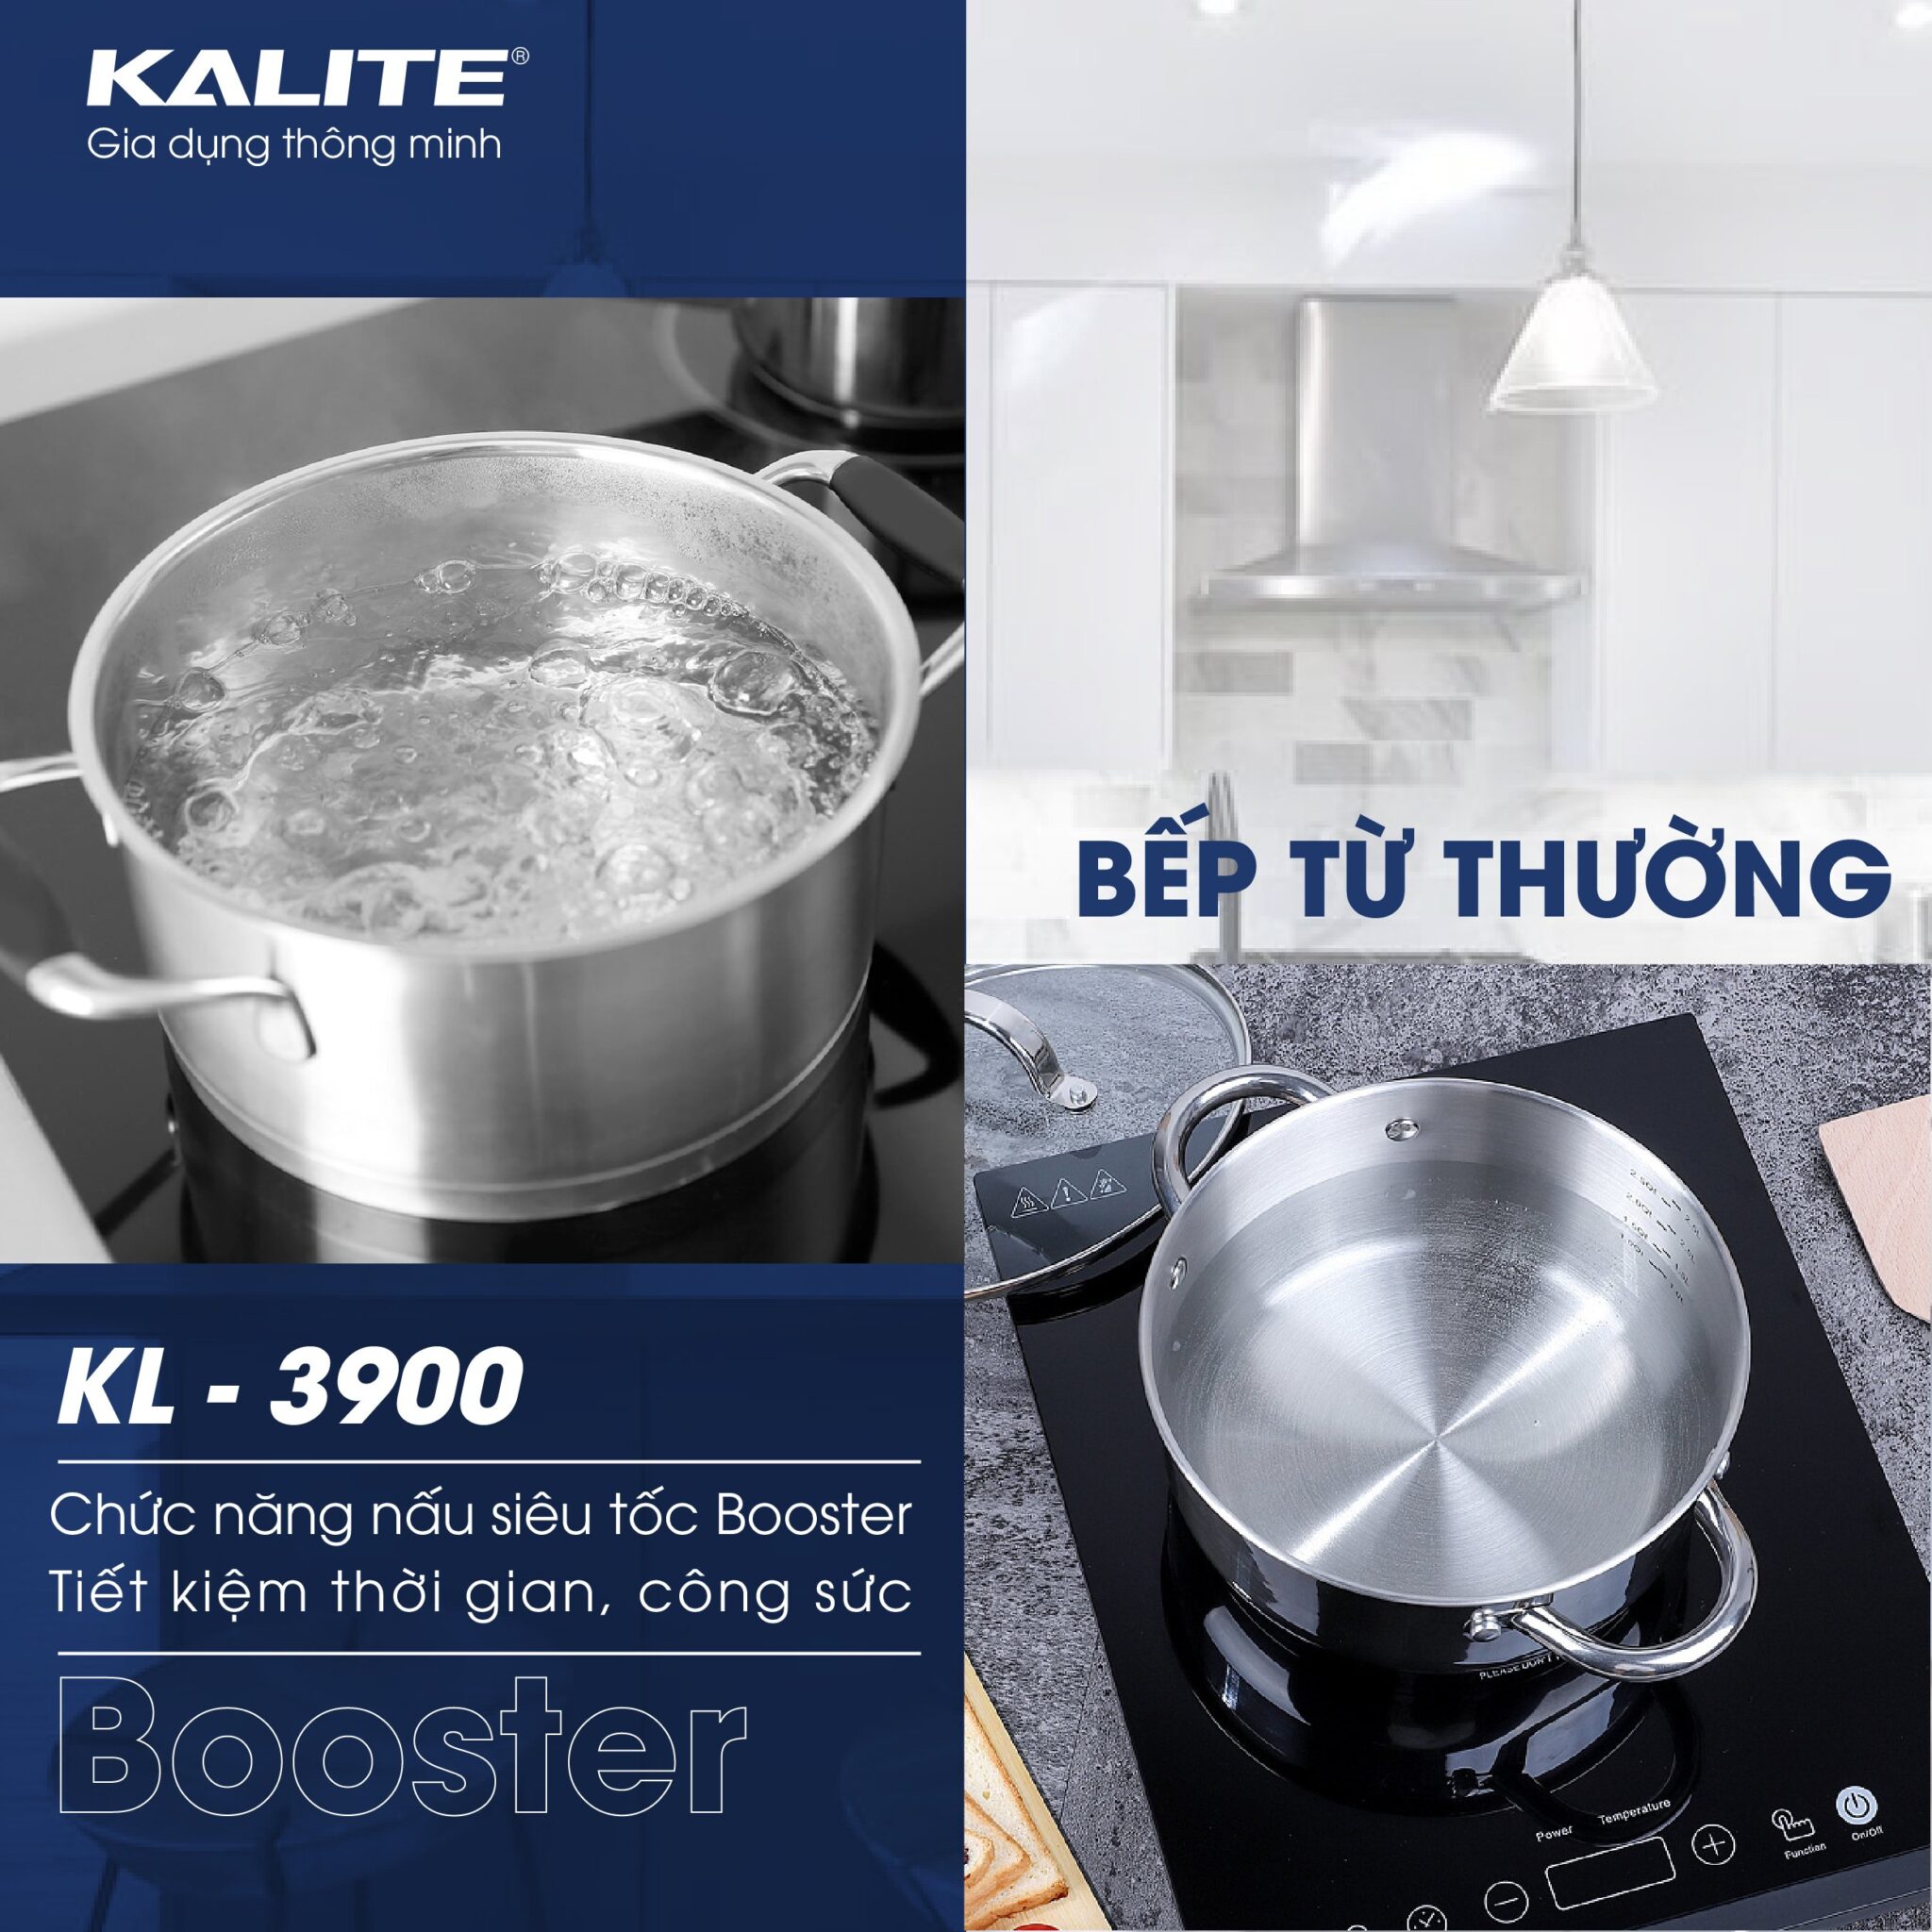 Bếp từ đôi Kalite KL 3900, công suất 4400W, mặt kính Schott Seran chuẩn Đức, công nghệ inverter tiết kiệm điện, thân làm bằng thép không gỉ, nhập khẩu Thái Lan, hàng chính hãng